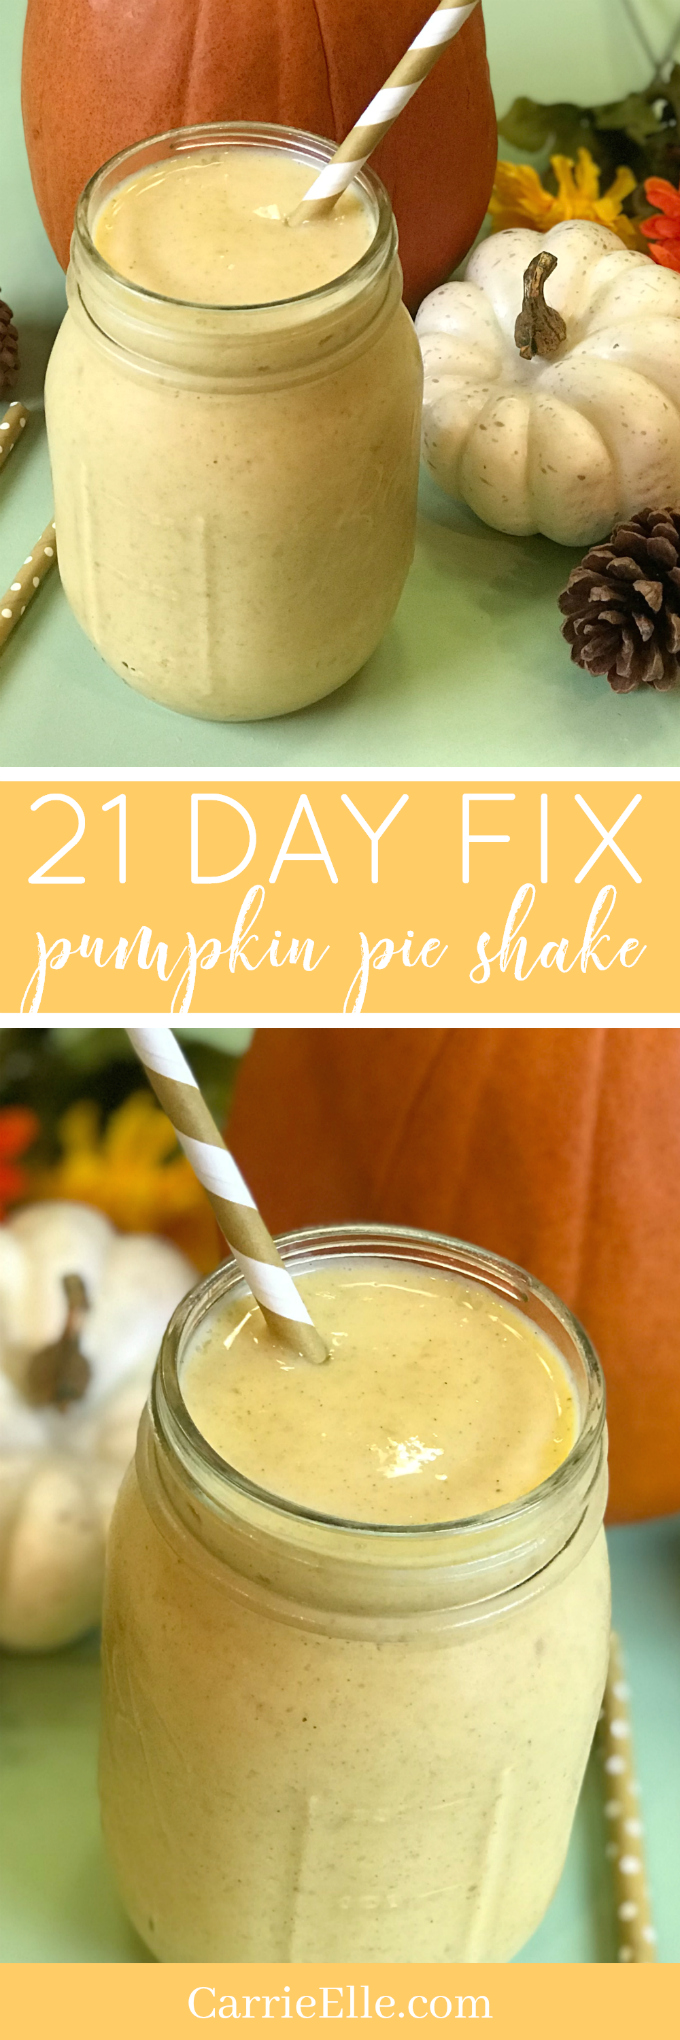 21 Day Fix Pumpkin Pie Shake